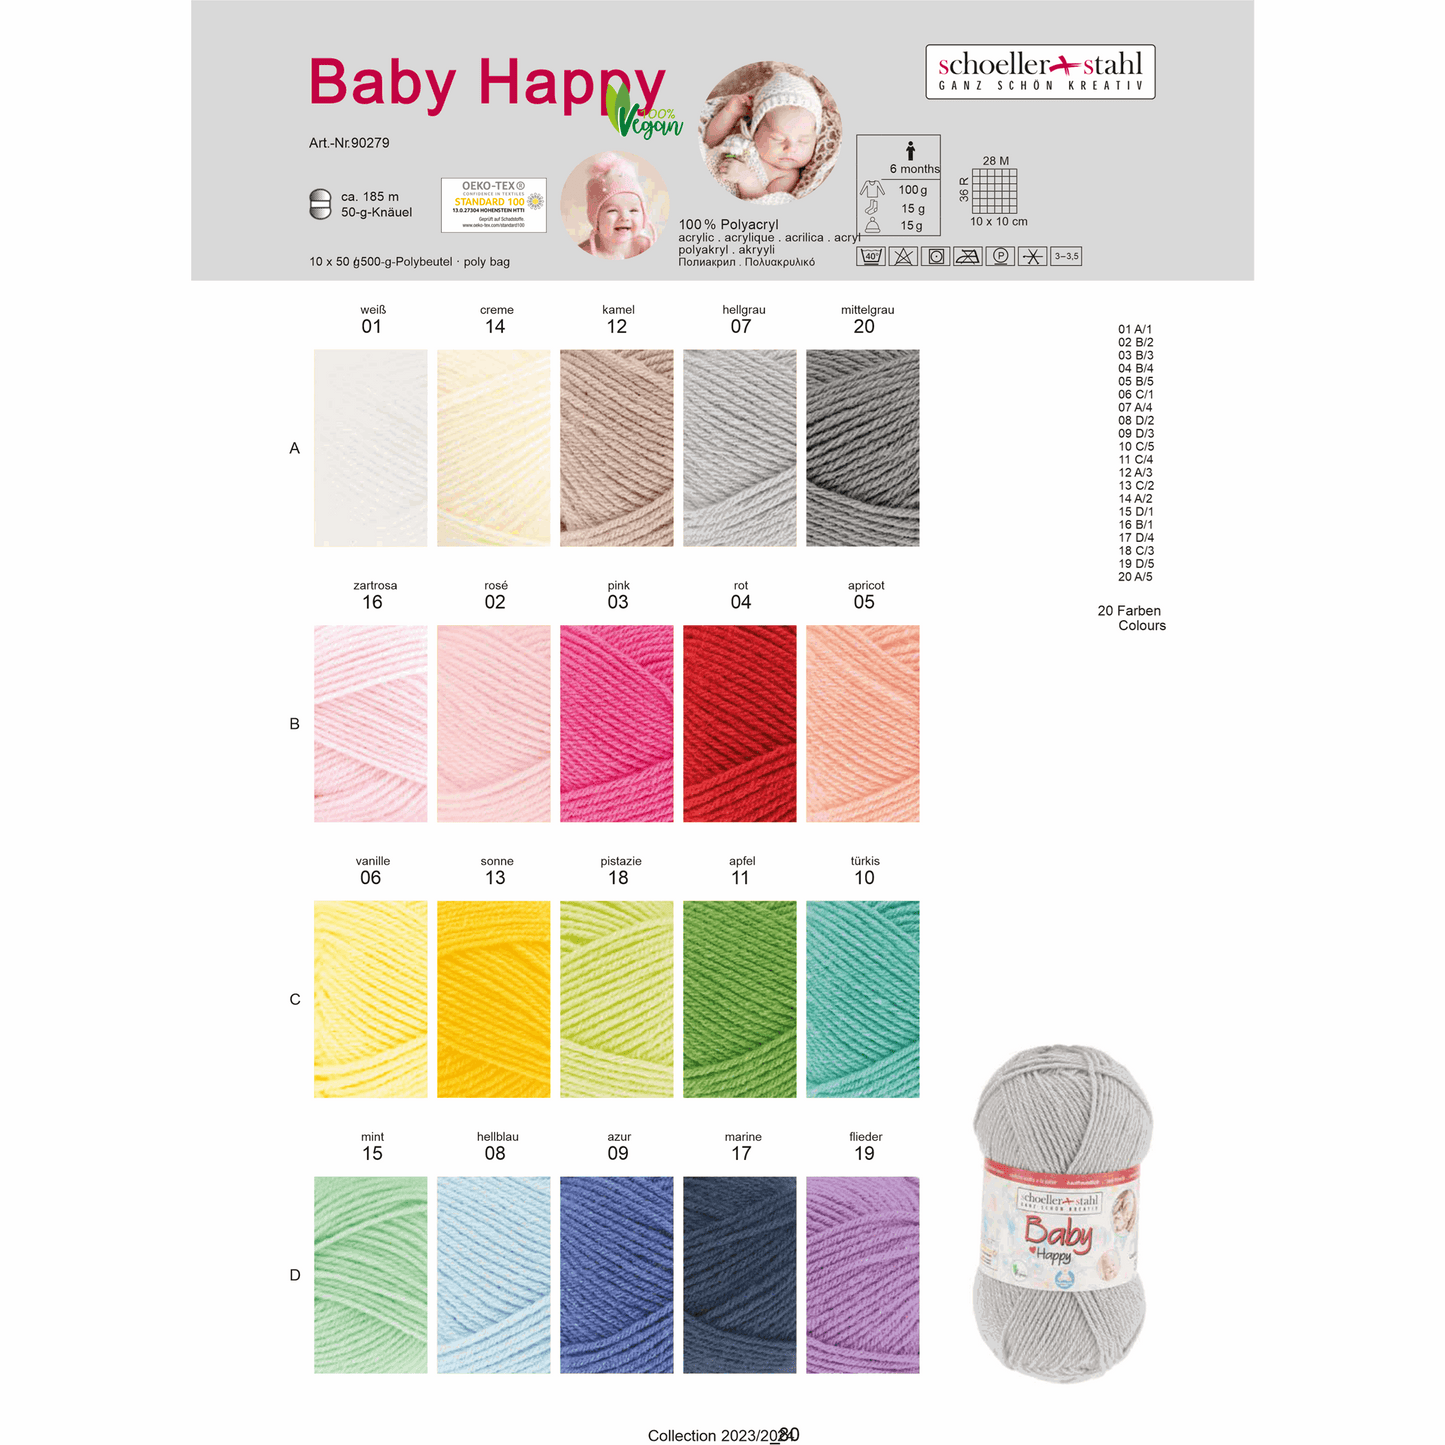 Baby happy 50g, 90279, color 17, navy